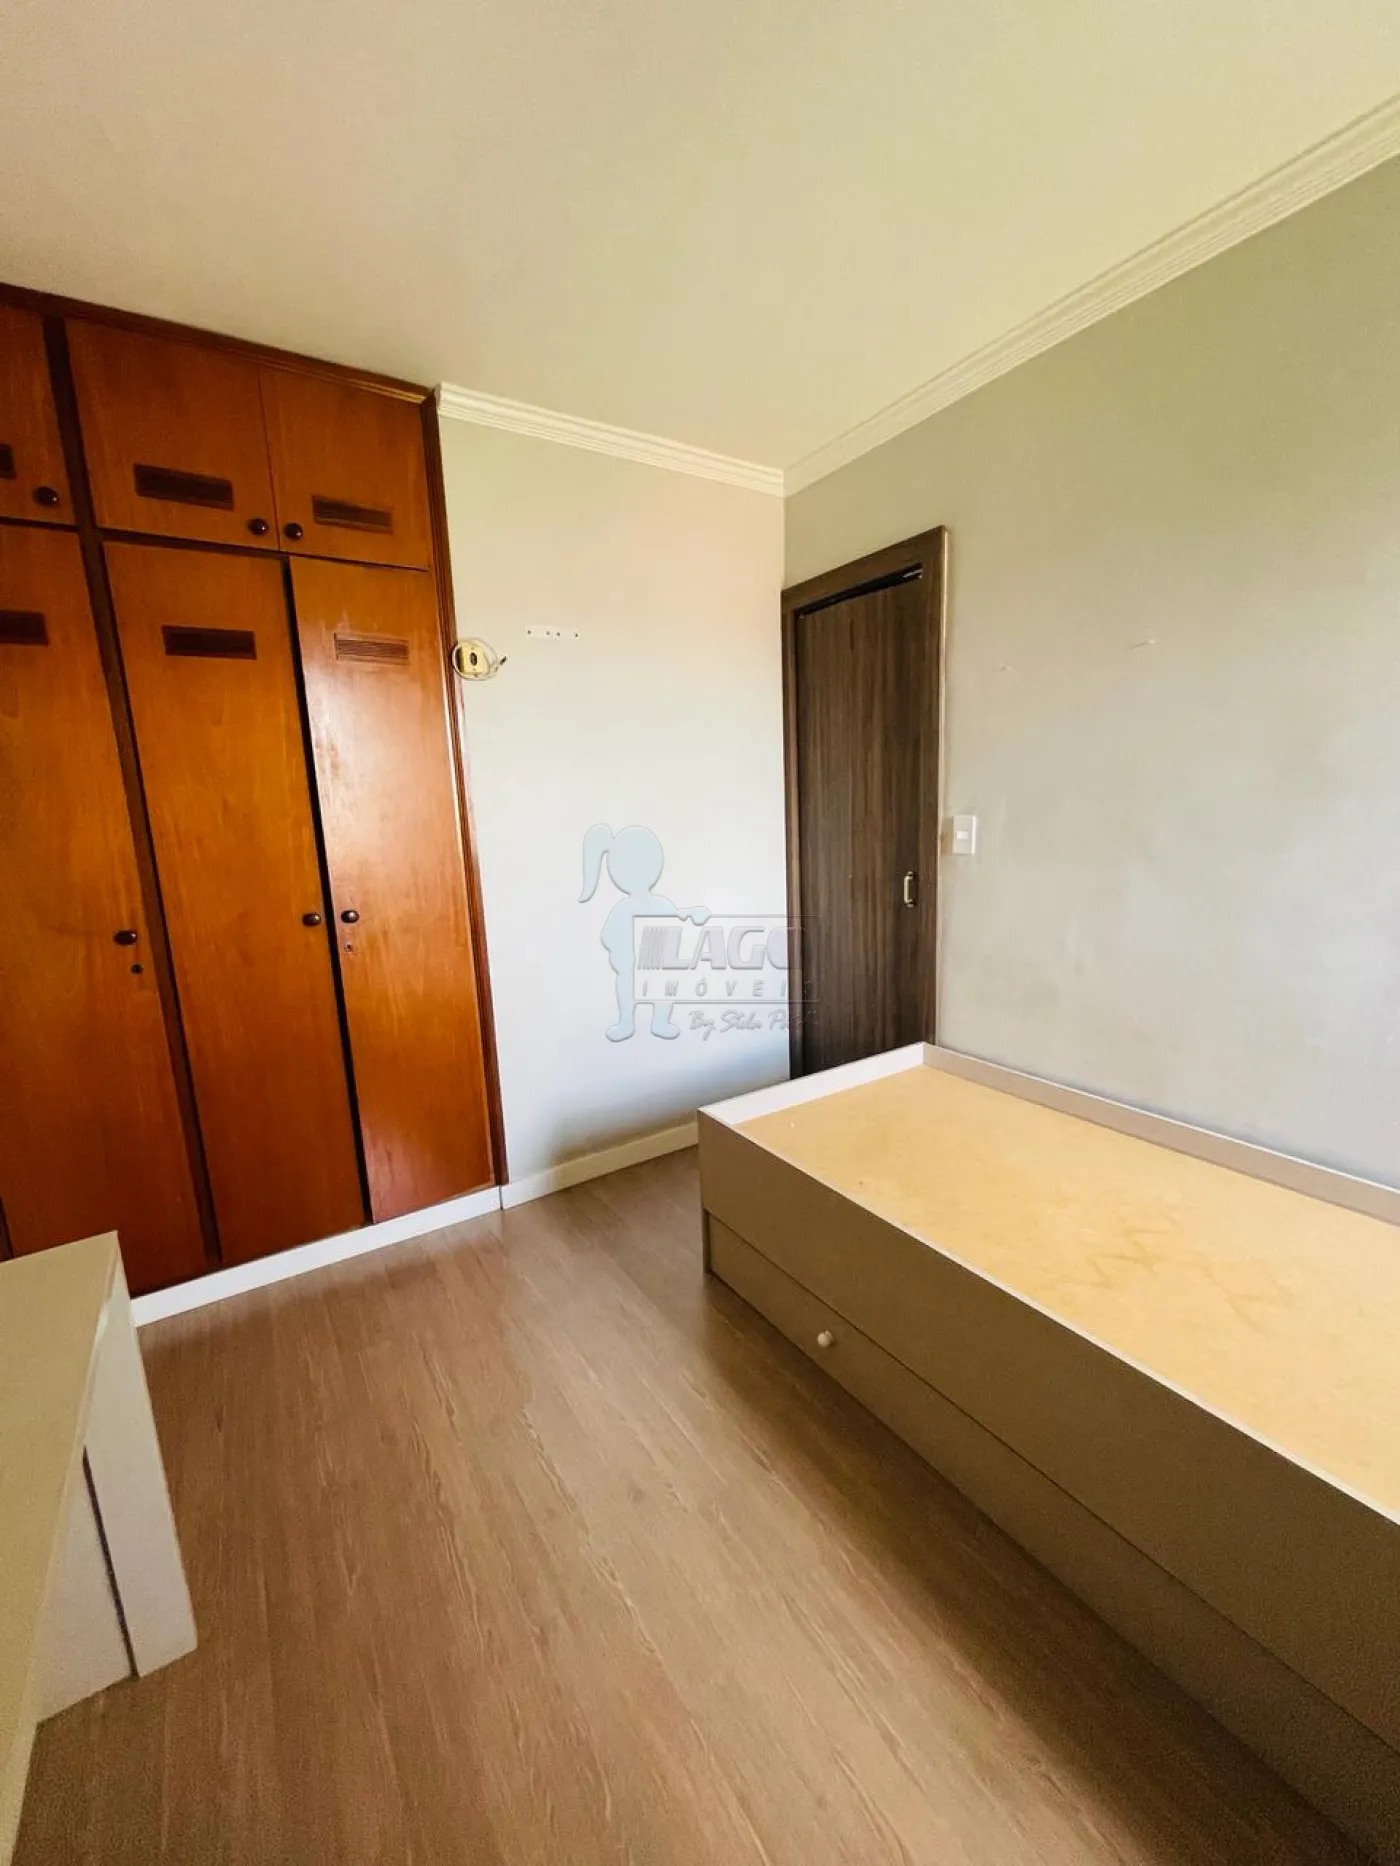 Alugar Apartamentos / Padrão em Ribeirão Preto R$ 100,00 - Foto 15